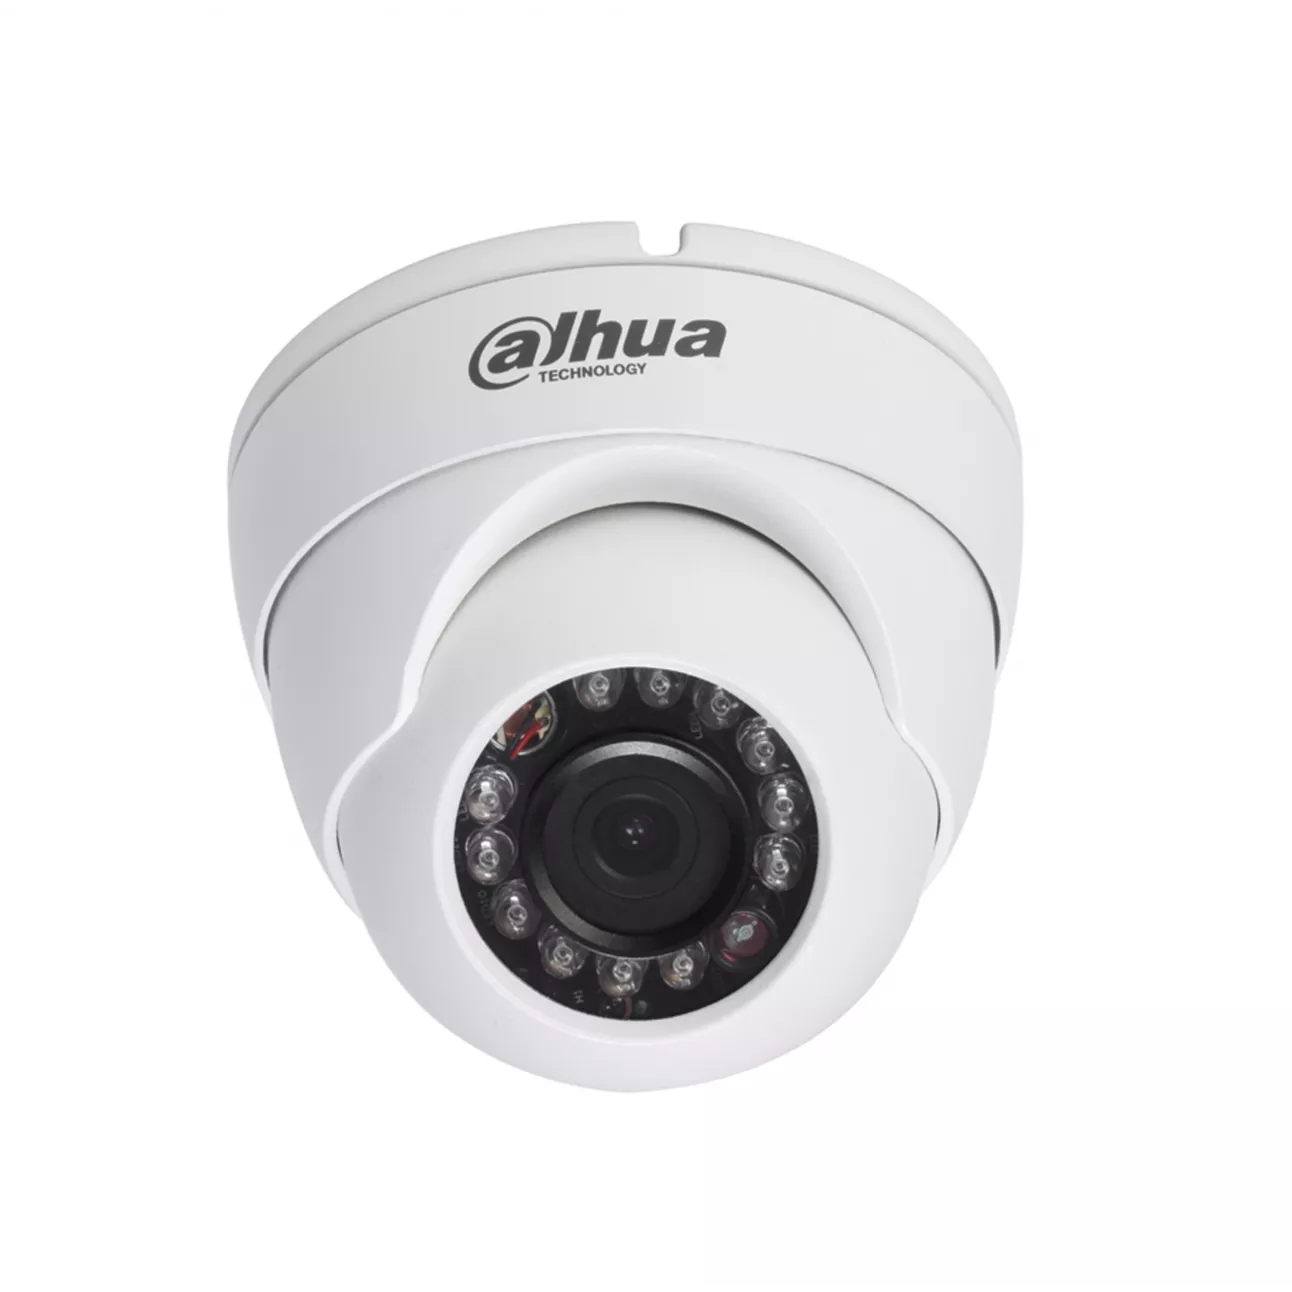 HDCVI купольная мини камера Dahua DH-HAC-HDW1200MP-0360B 1080p, 3.6мм, ИК до 20м, 12В